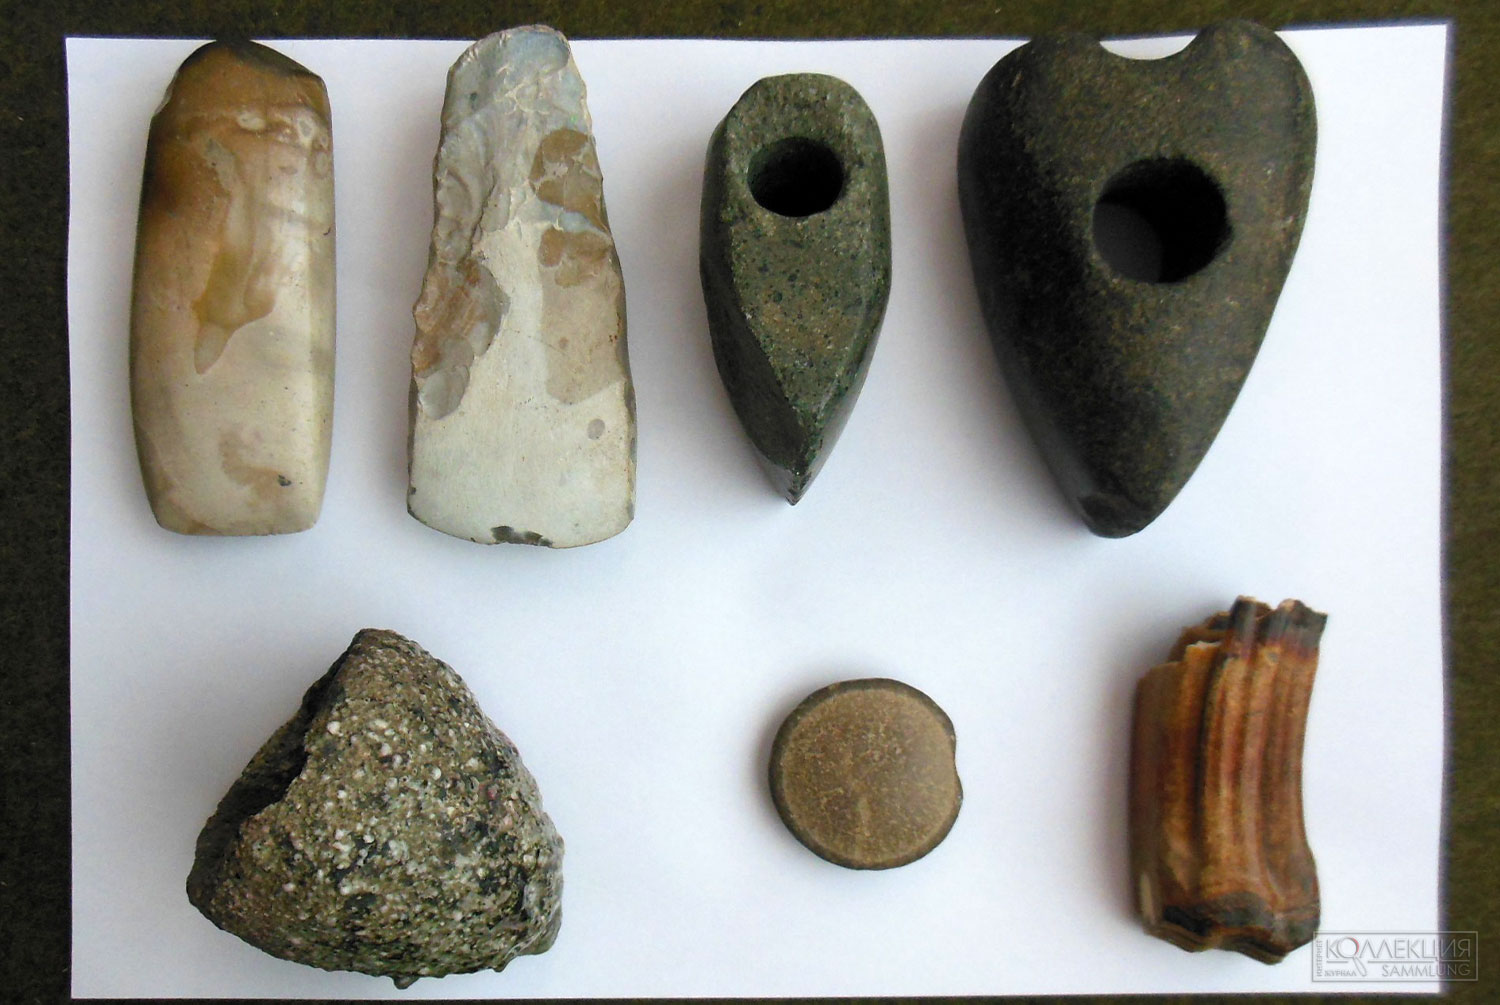 Единичные археологические находки обнаруженные на территории Вилейского района. Топоры каменные шлифованные со сквозными отверстиями, топоры кремневые, зуб дикого коня, украшение каменное женское, тигель для плавки олова